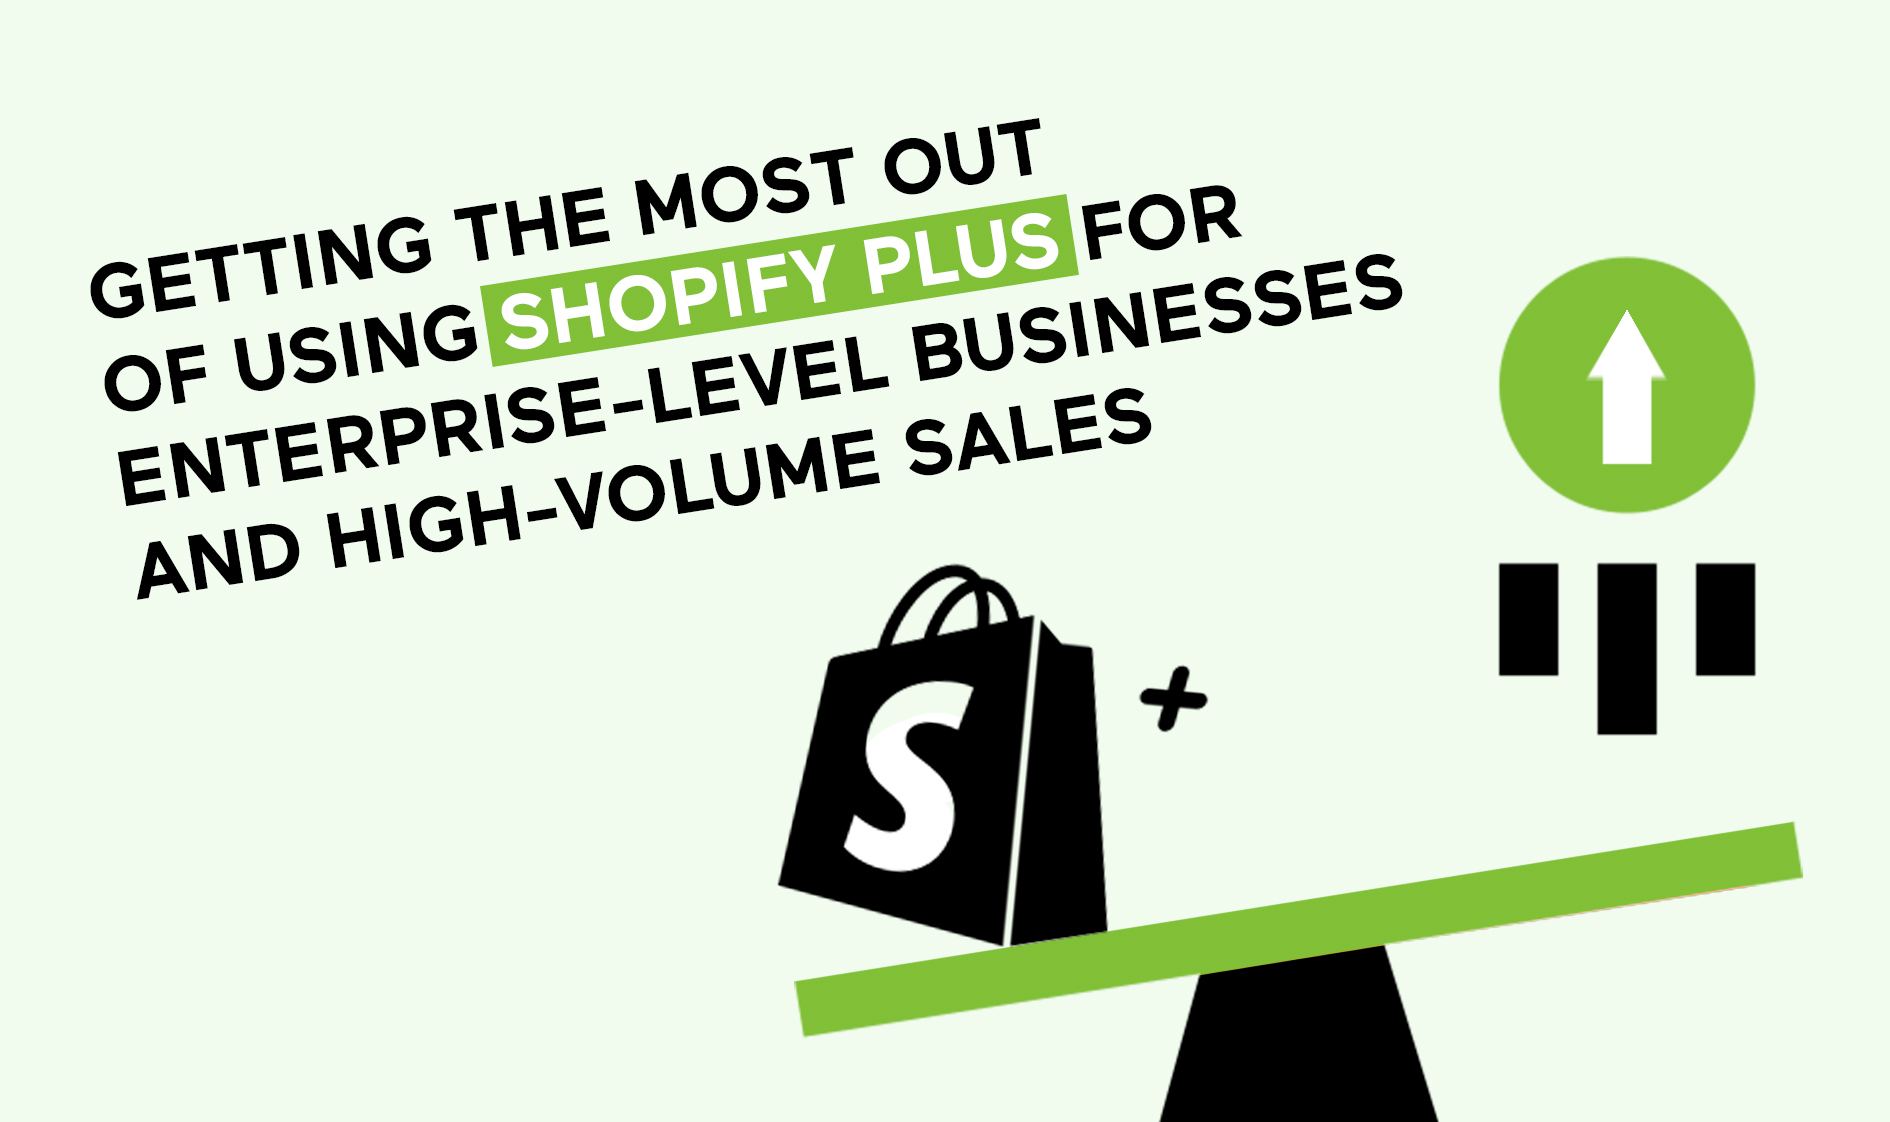 Shopify Plus for Enterprises